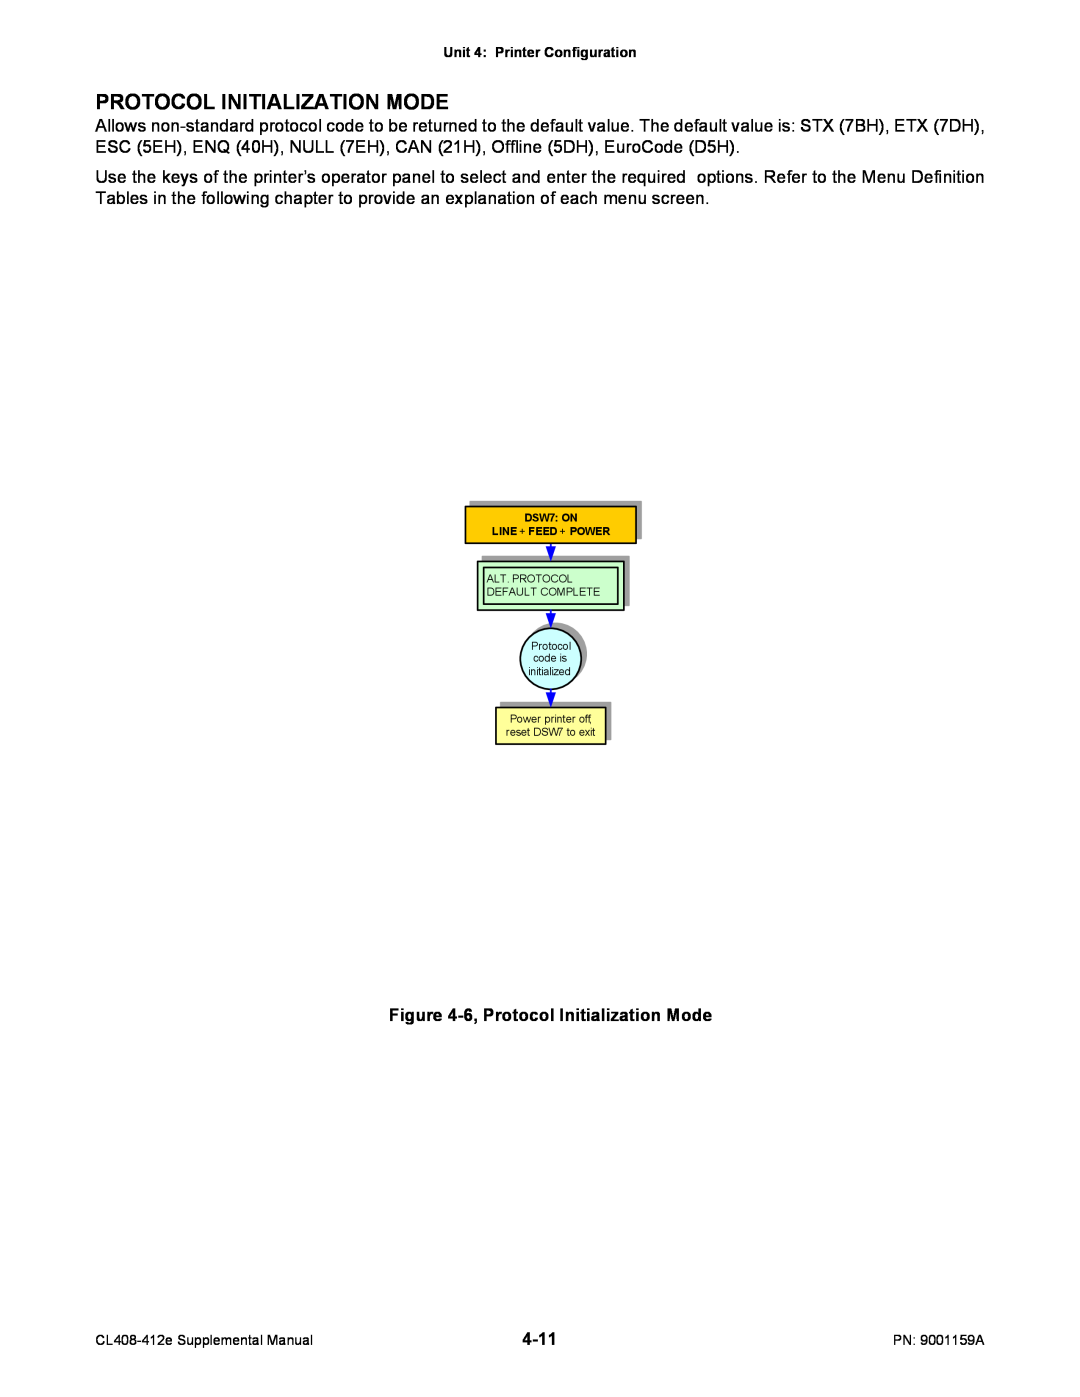 SATO CL408-412e manual 6, Protocol Initialization Mode, 4-11 